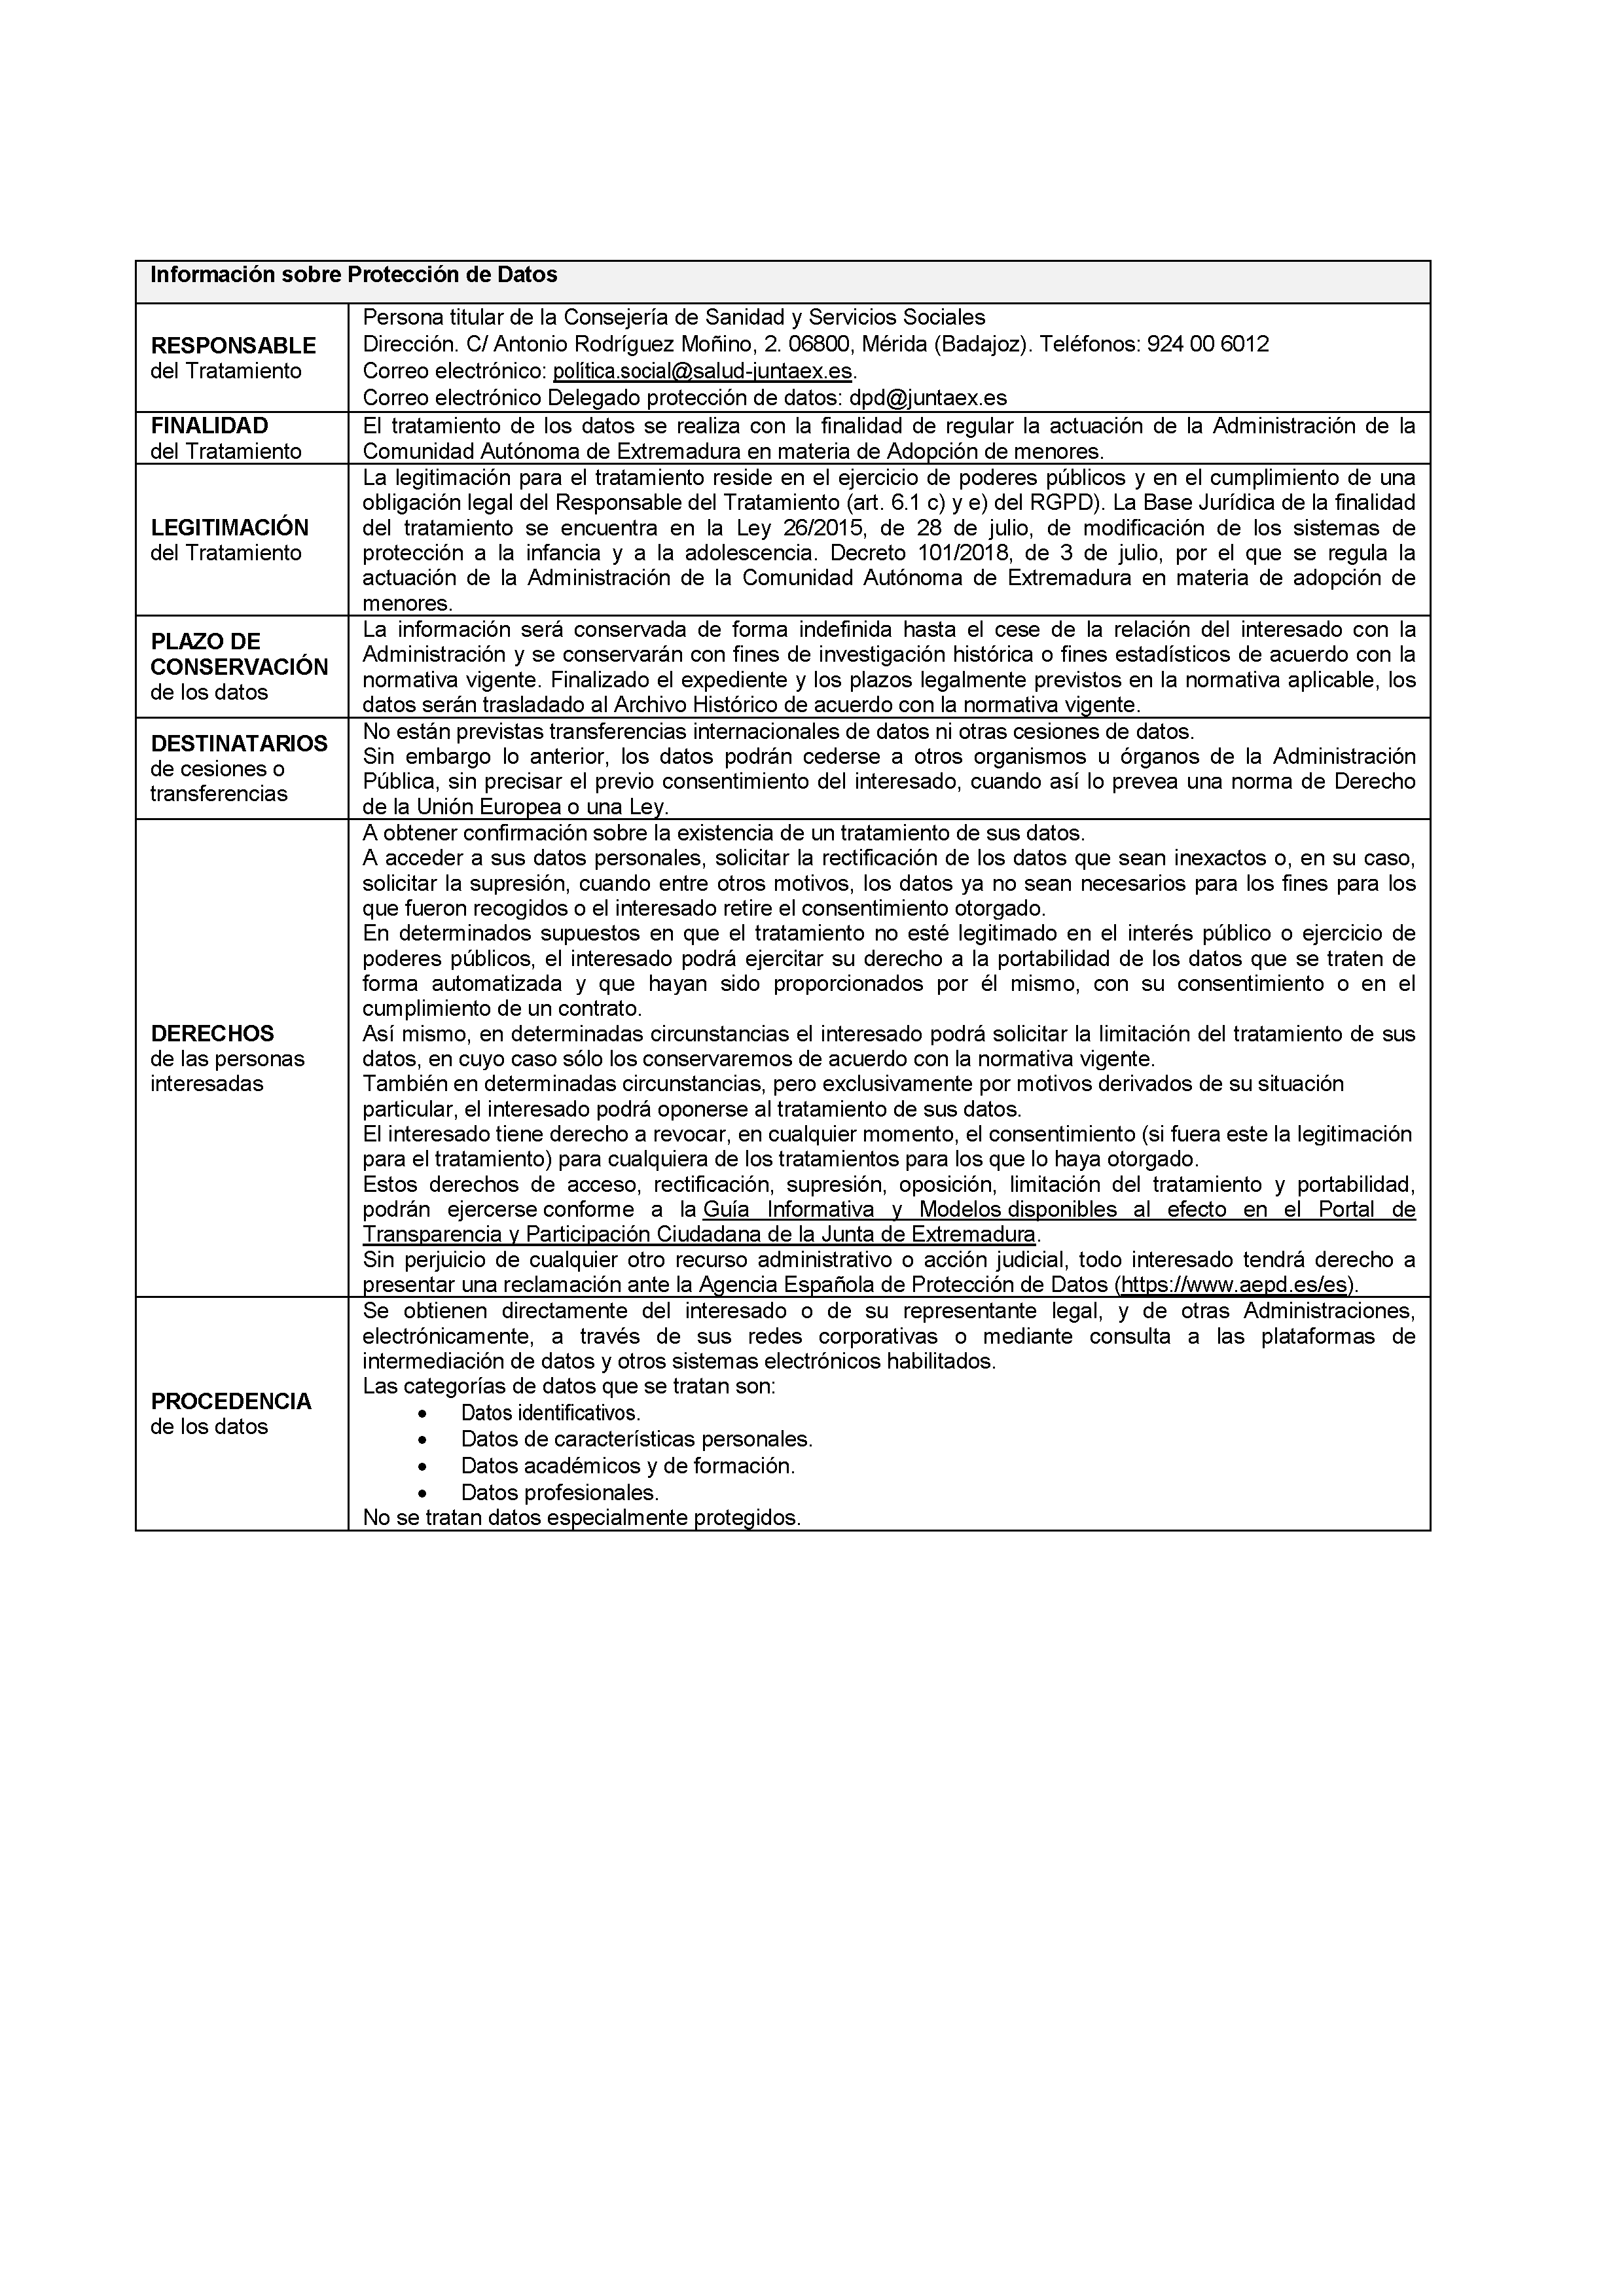 ANEXOS - SOLICITUD DE SESIONES INFORMATIVAS Pag 20